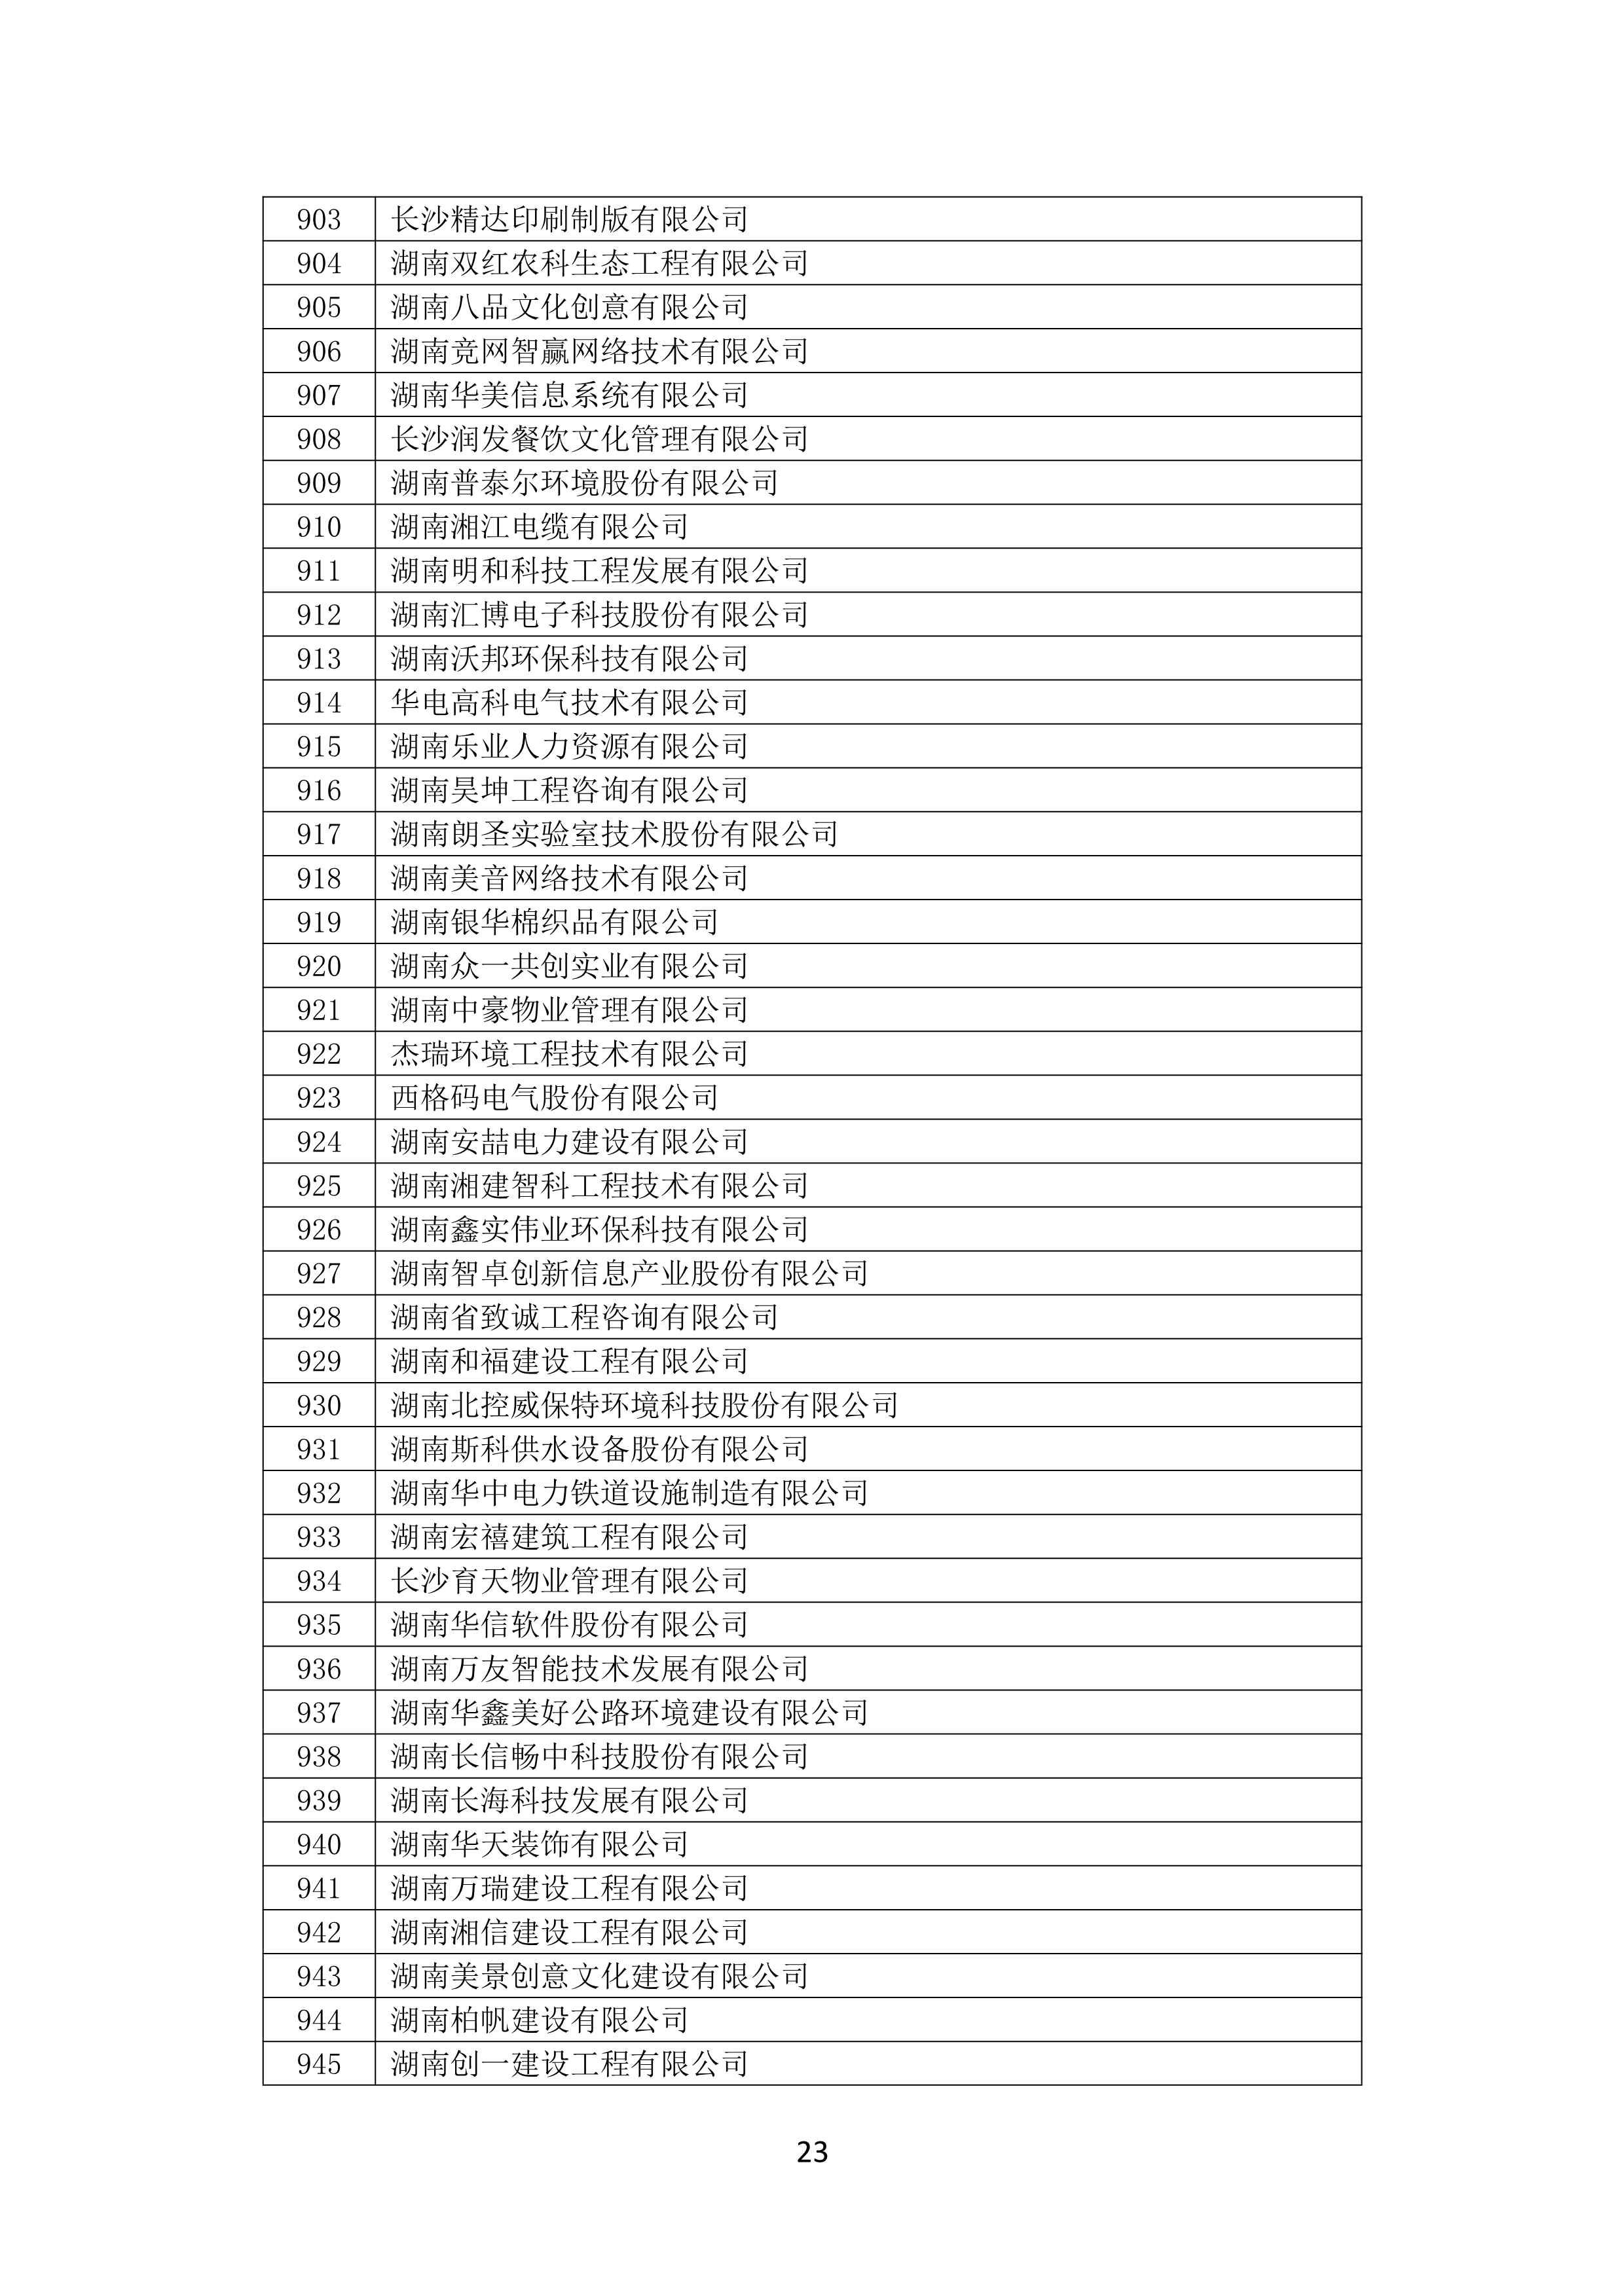 2021 年(nián)度湖南省守合同重信用企業名單_24.png